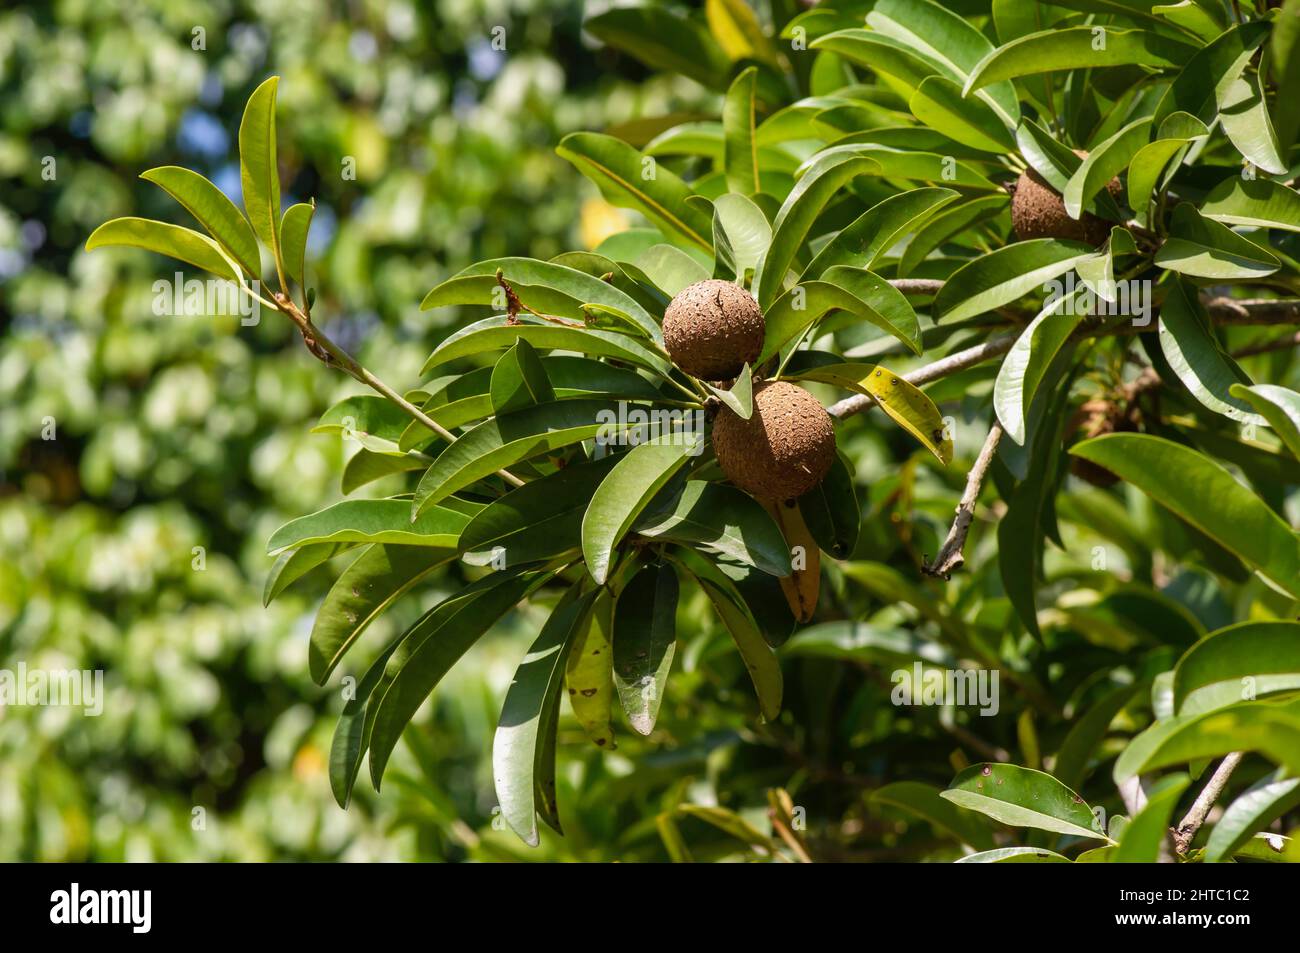 Fruits de manille Sawo crus (Manilkara zapota) sur l'arbre, communément connu sous le nom de sapodilla, sapota, chikoo, chico, naseberry, ou nispero Banque D'Images